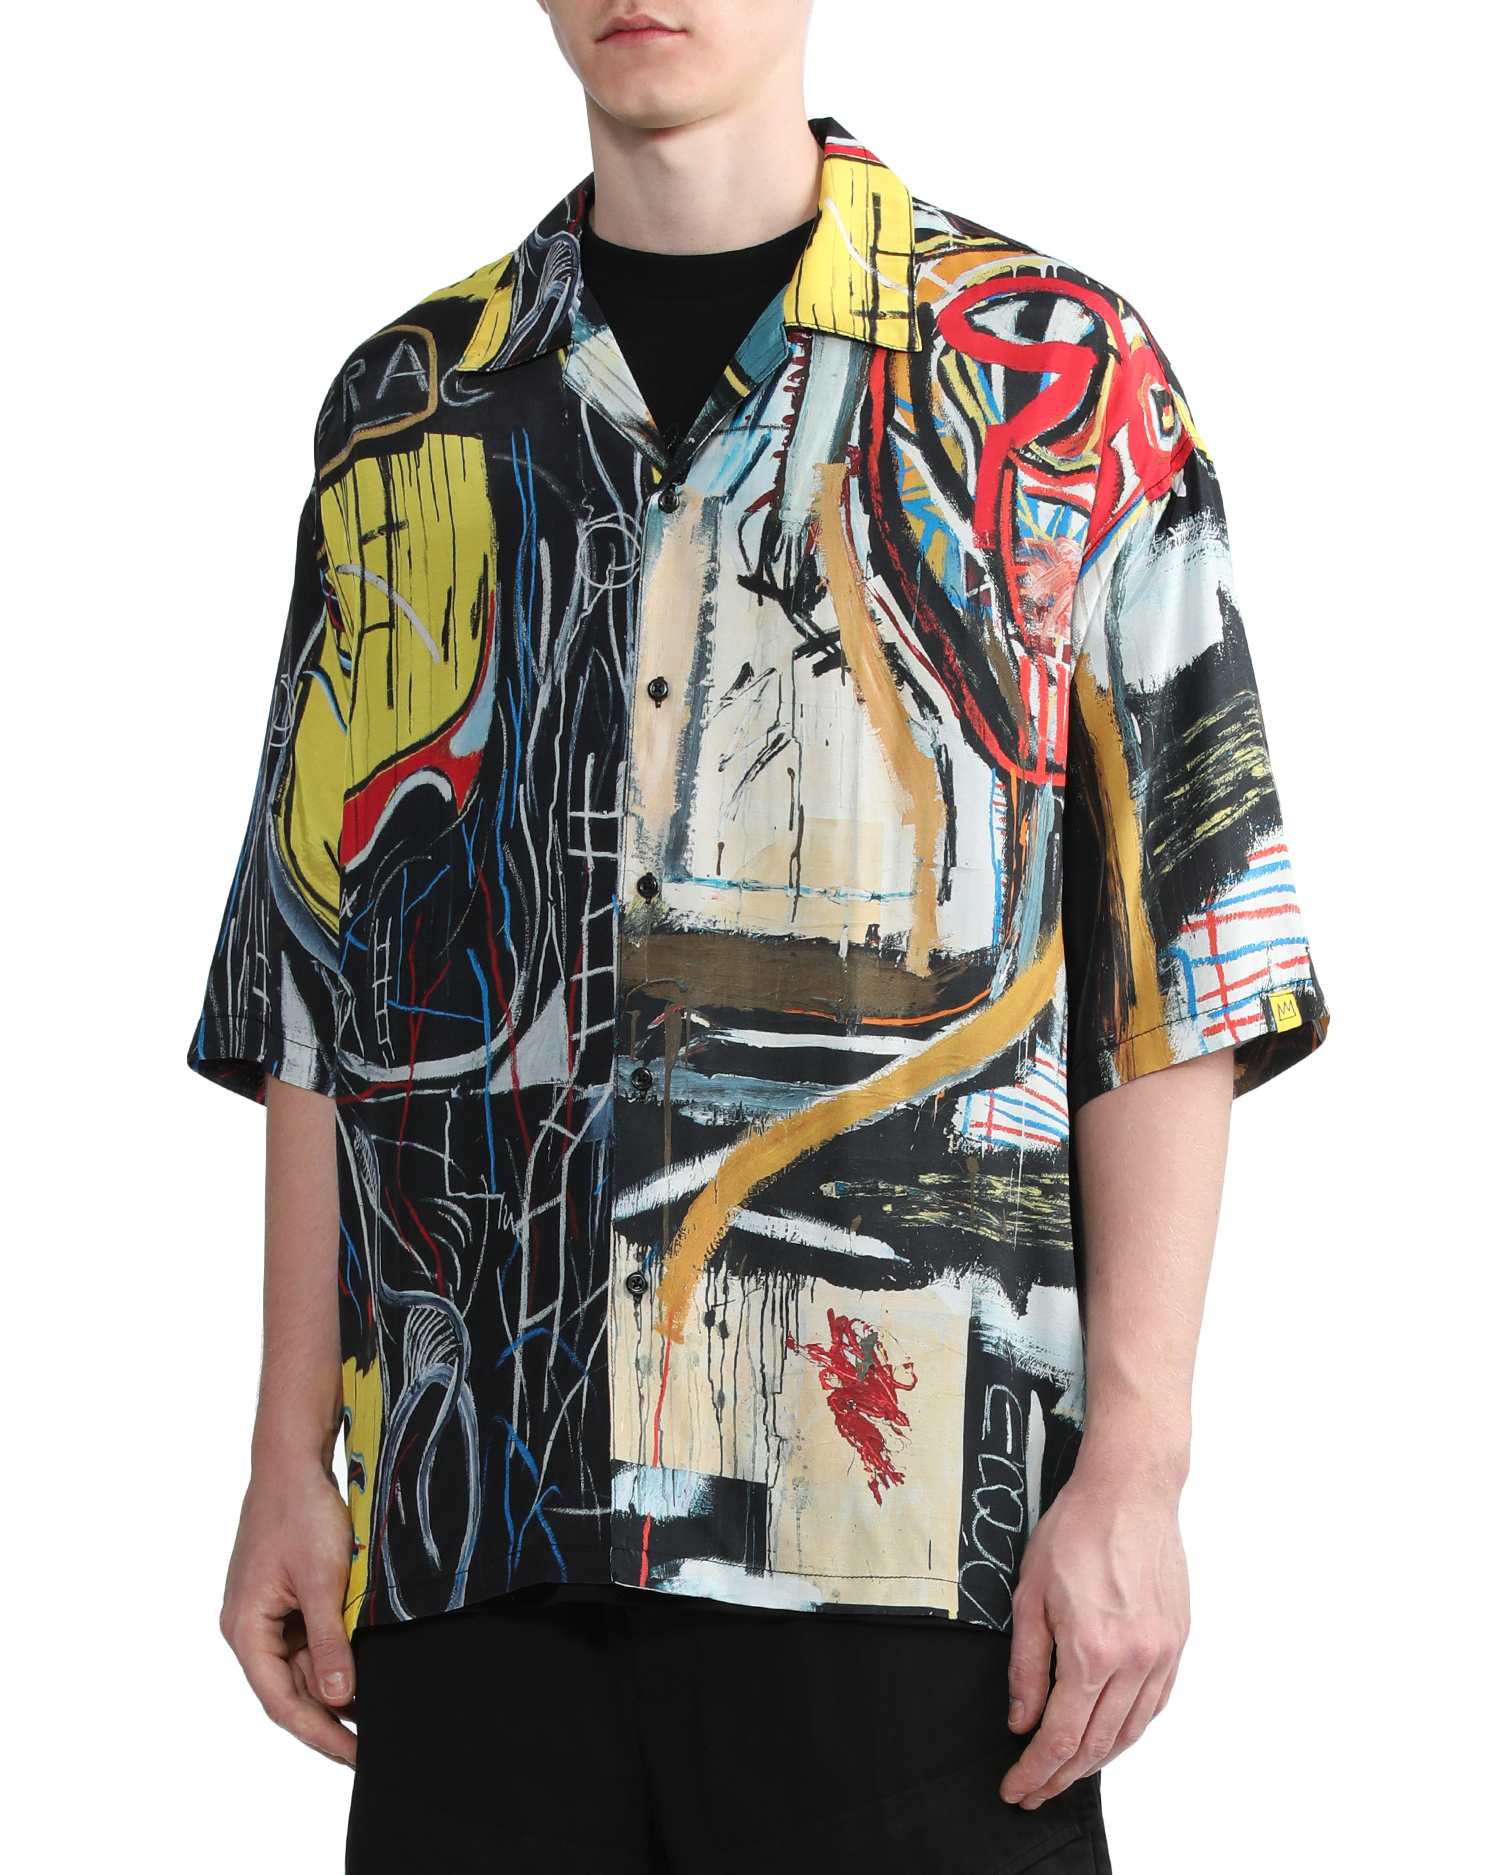 IZZUE Bestsellers X Jean-Michel Basquiat graphic shirt ⇔ guarantee of ...